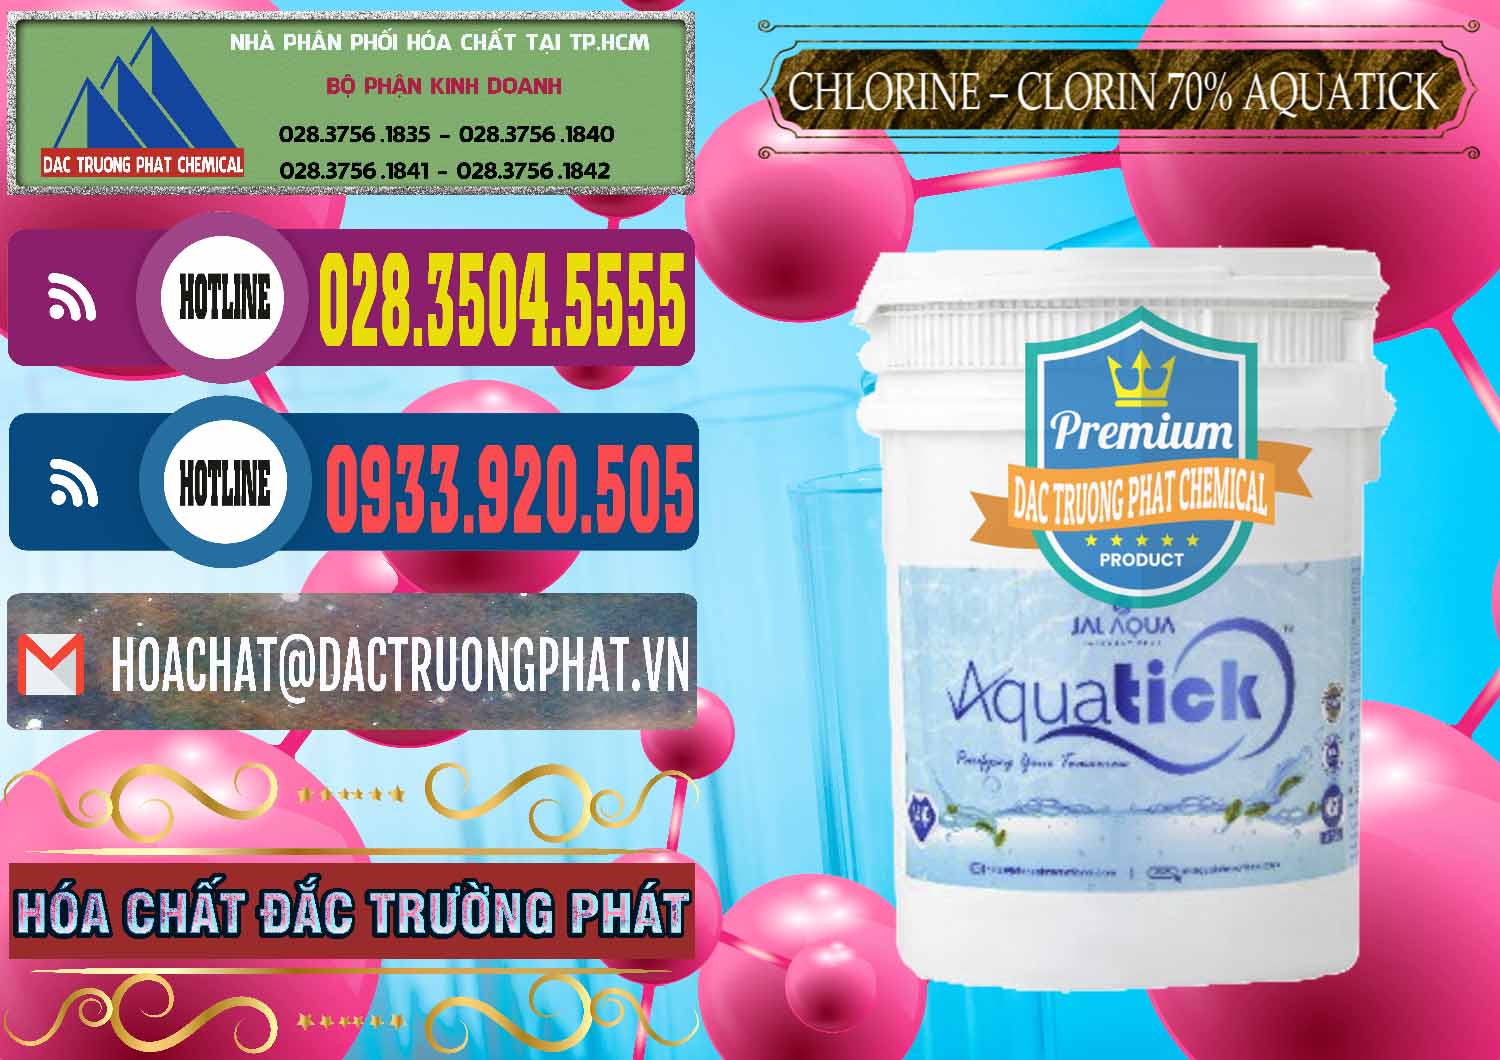 Đơn vị chuyên cung cấp - bán Chlorine – Clorin 70% Aquatick Thùng Cao Jal Aqua Ấn Độ India - 0237 - Cty chuyên nhập khẩu & cung cấp hóa chất tại TP.HCM - muabanhoachat.com.vn